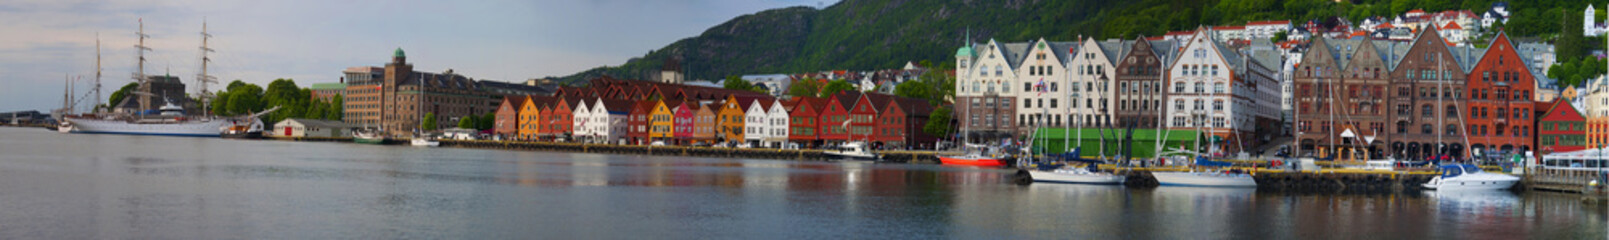 Hanseatic neighborhood Bergen Norway